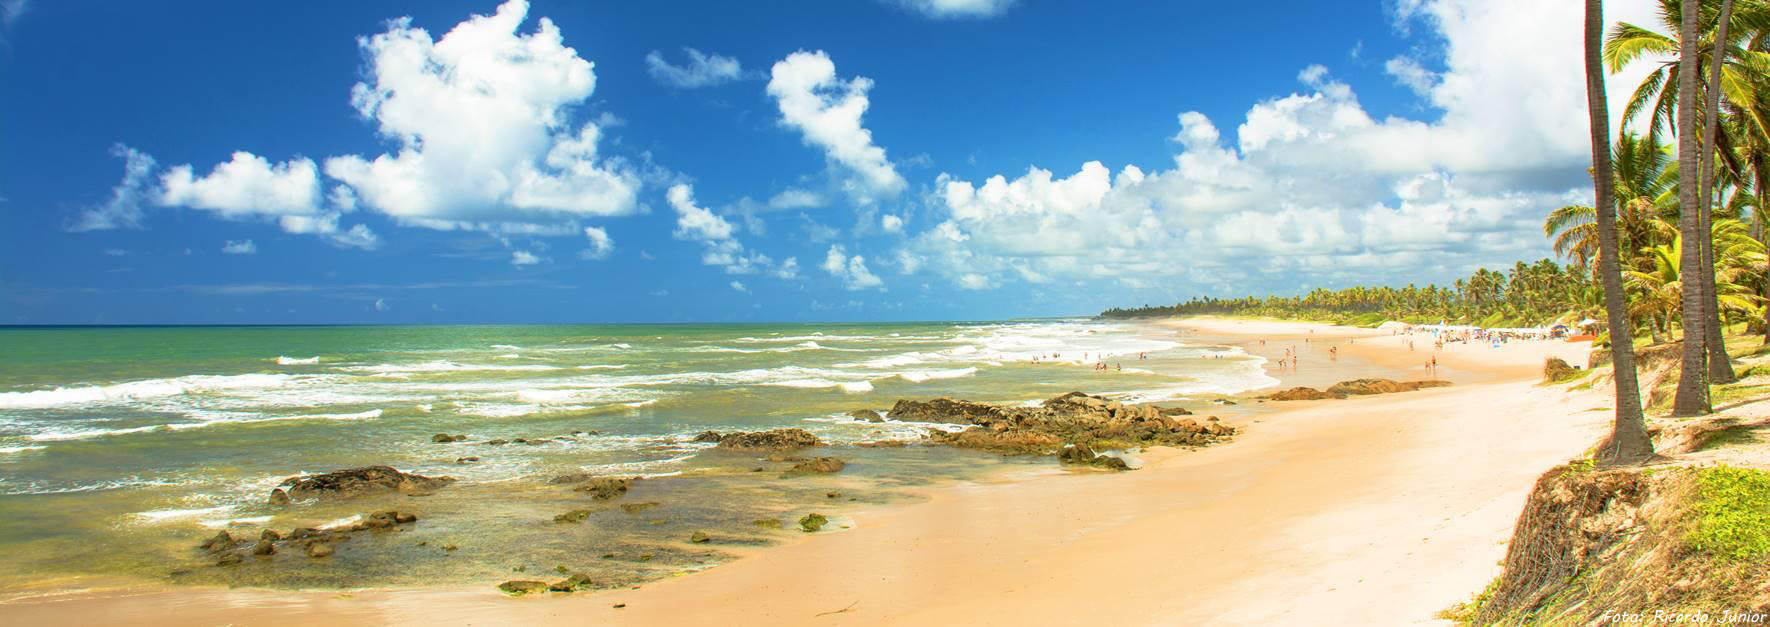 COSTA DO SAUÍPE é privilegiada com praias de mar esverdeado contornada por dunas e coqueiros